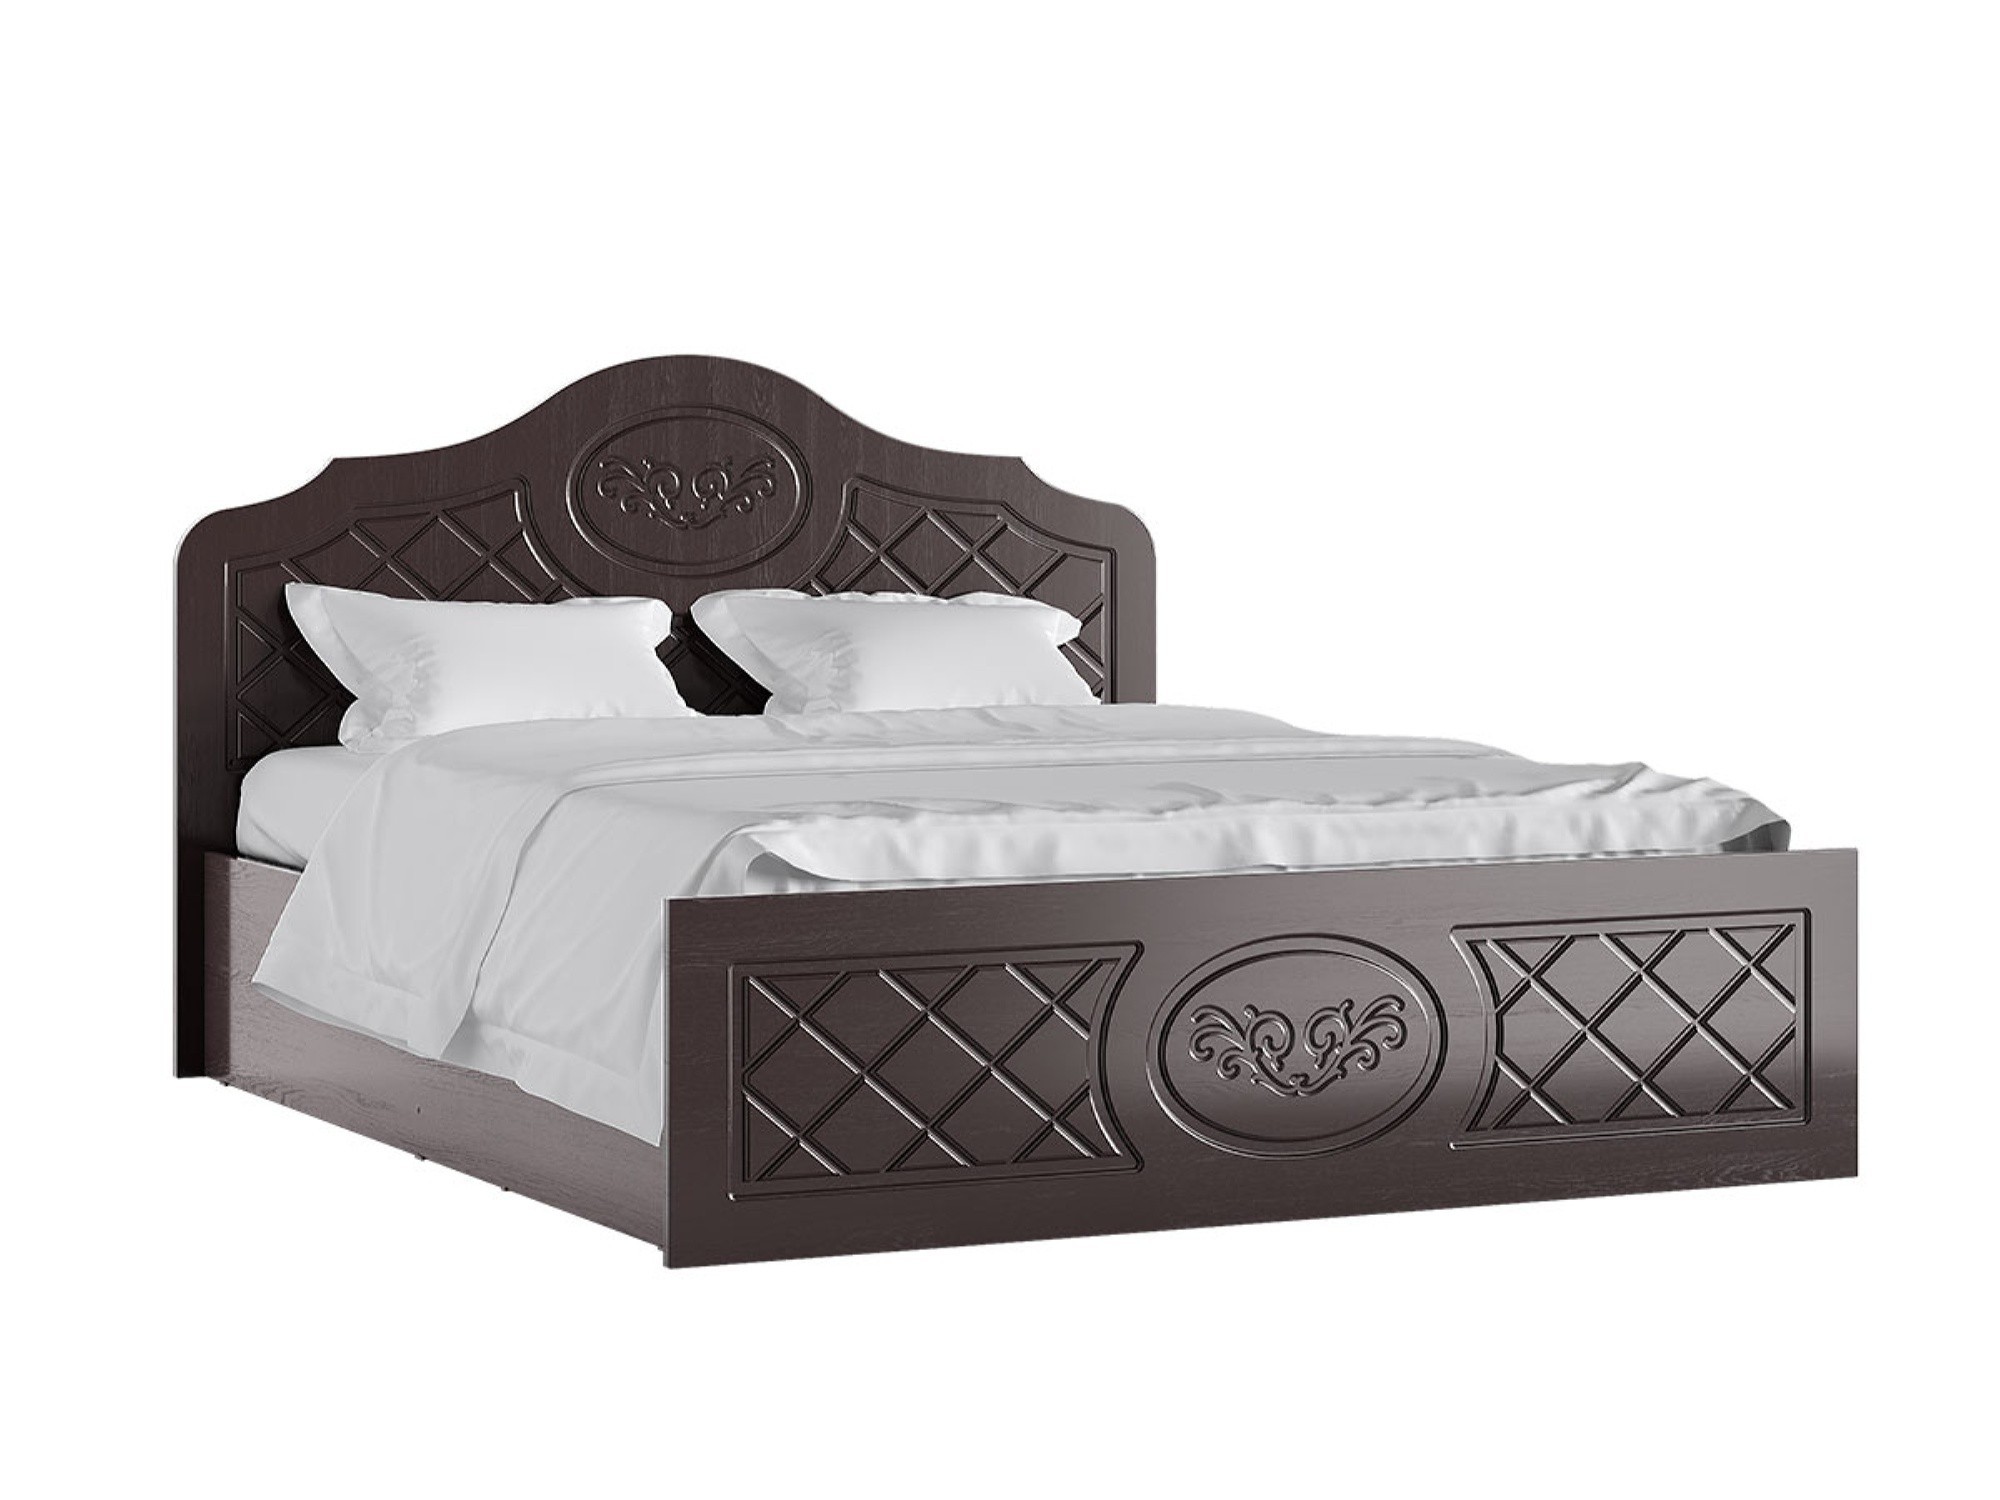 Престиж Кровать 140 (Венге шоколад) Венге шоколад, МДФ, ЛДСП престиж кровать 160 венге шоколад